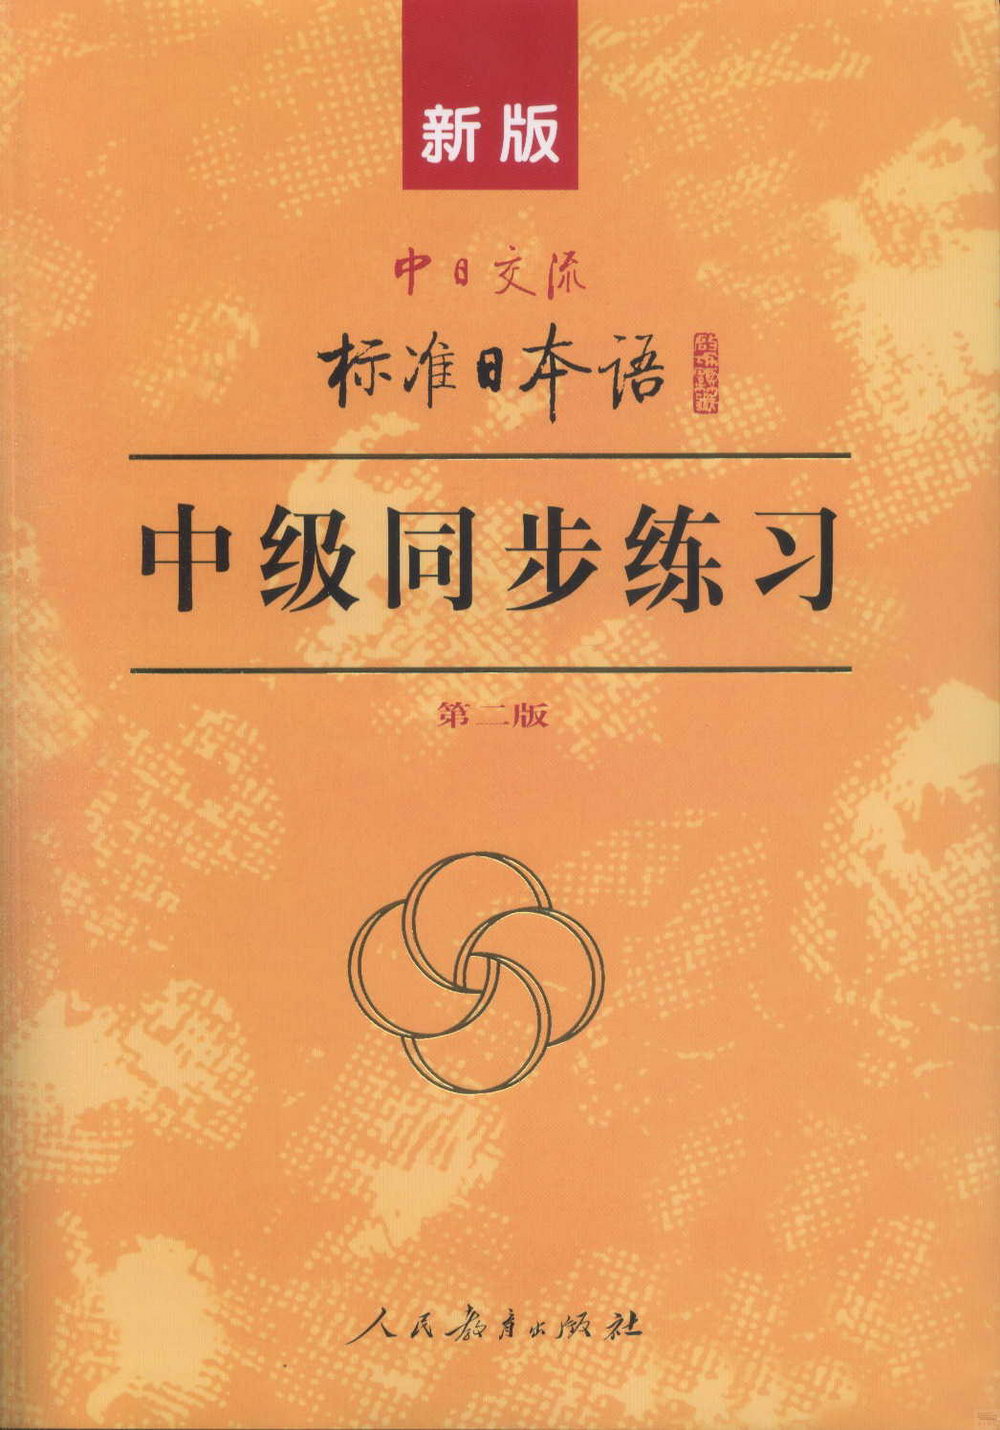 中日交流標准日本語中級同步練習(第2版)